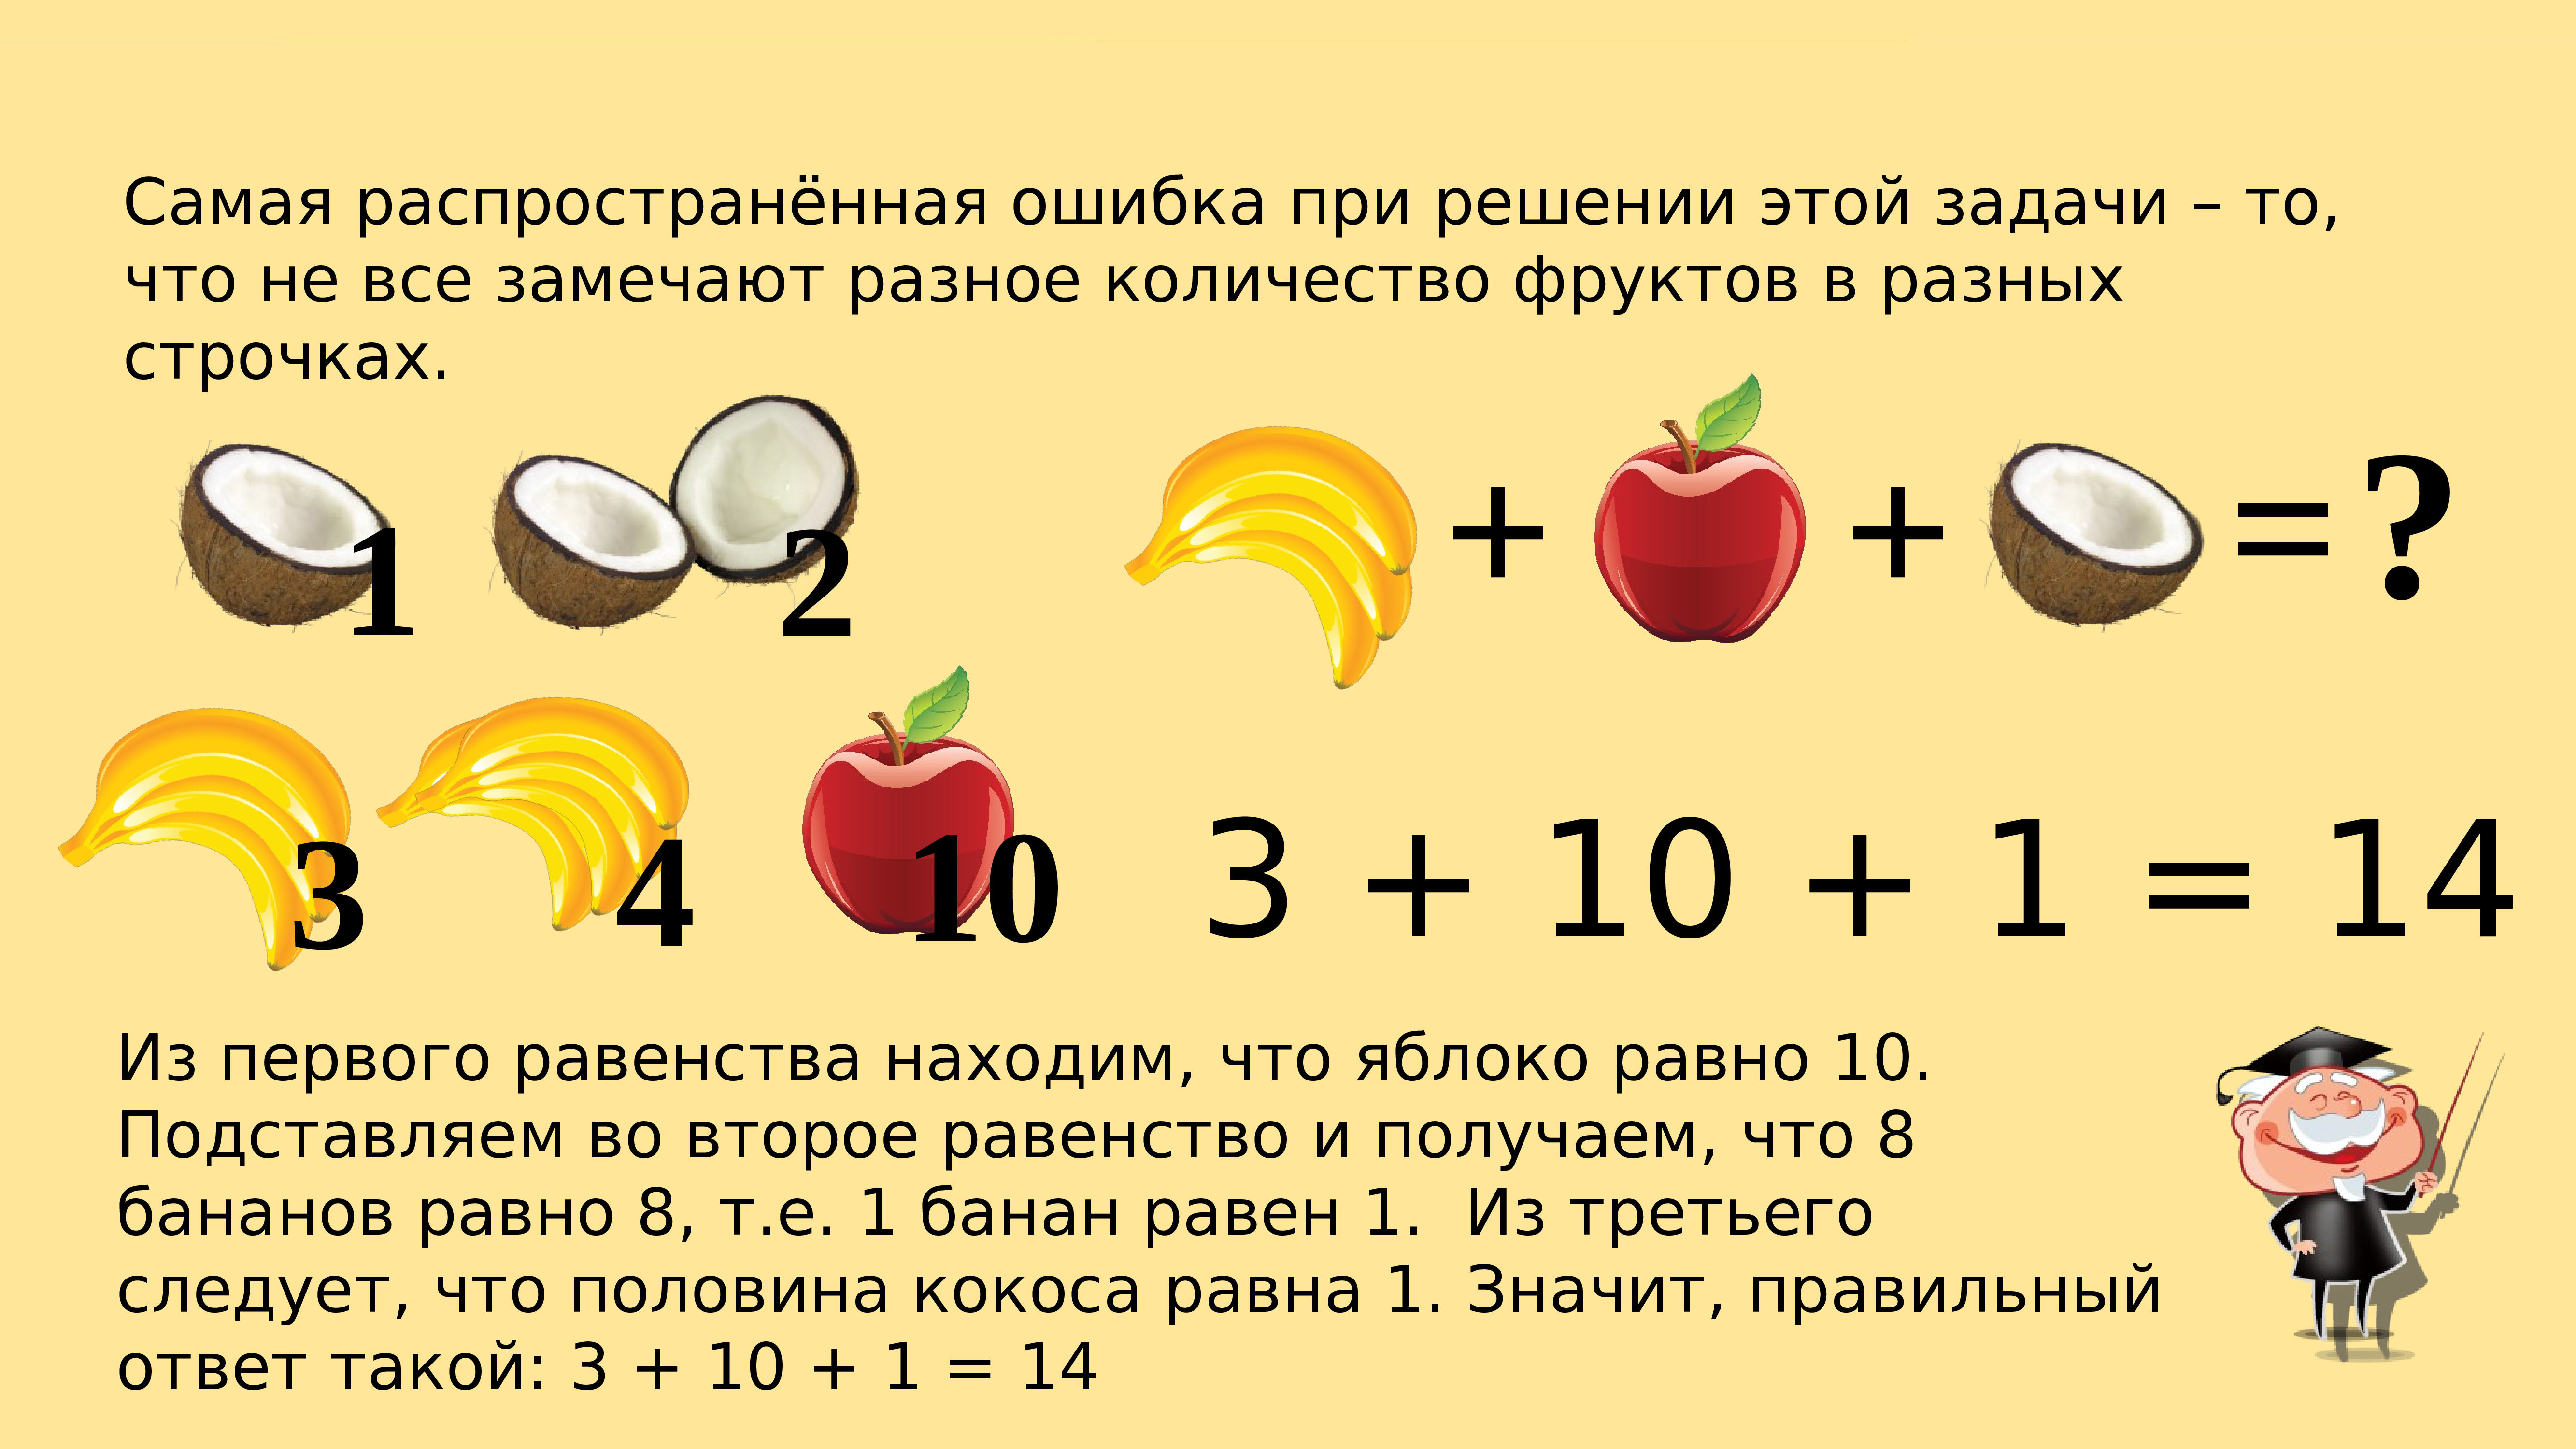 Фруктовая математика. Pflfxb YF kjubtr. Задачи с фруктами на логику. Головоломка математическая с фруктами. Математические задачи с фруктами.